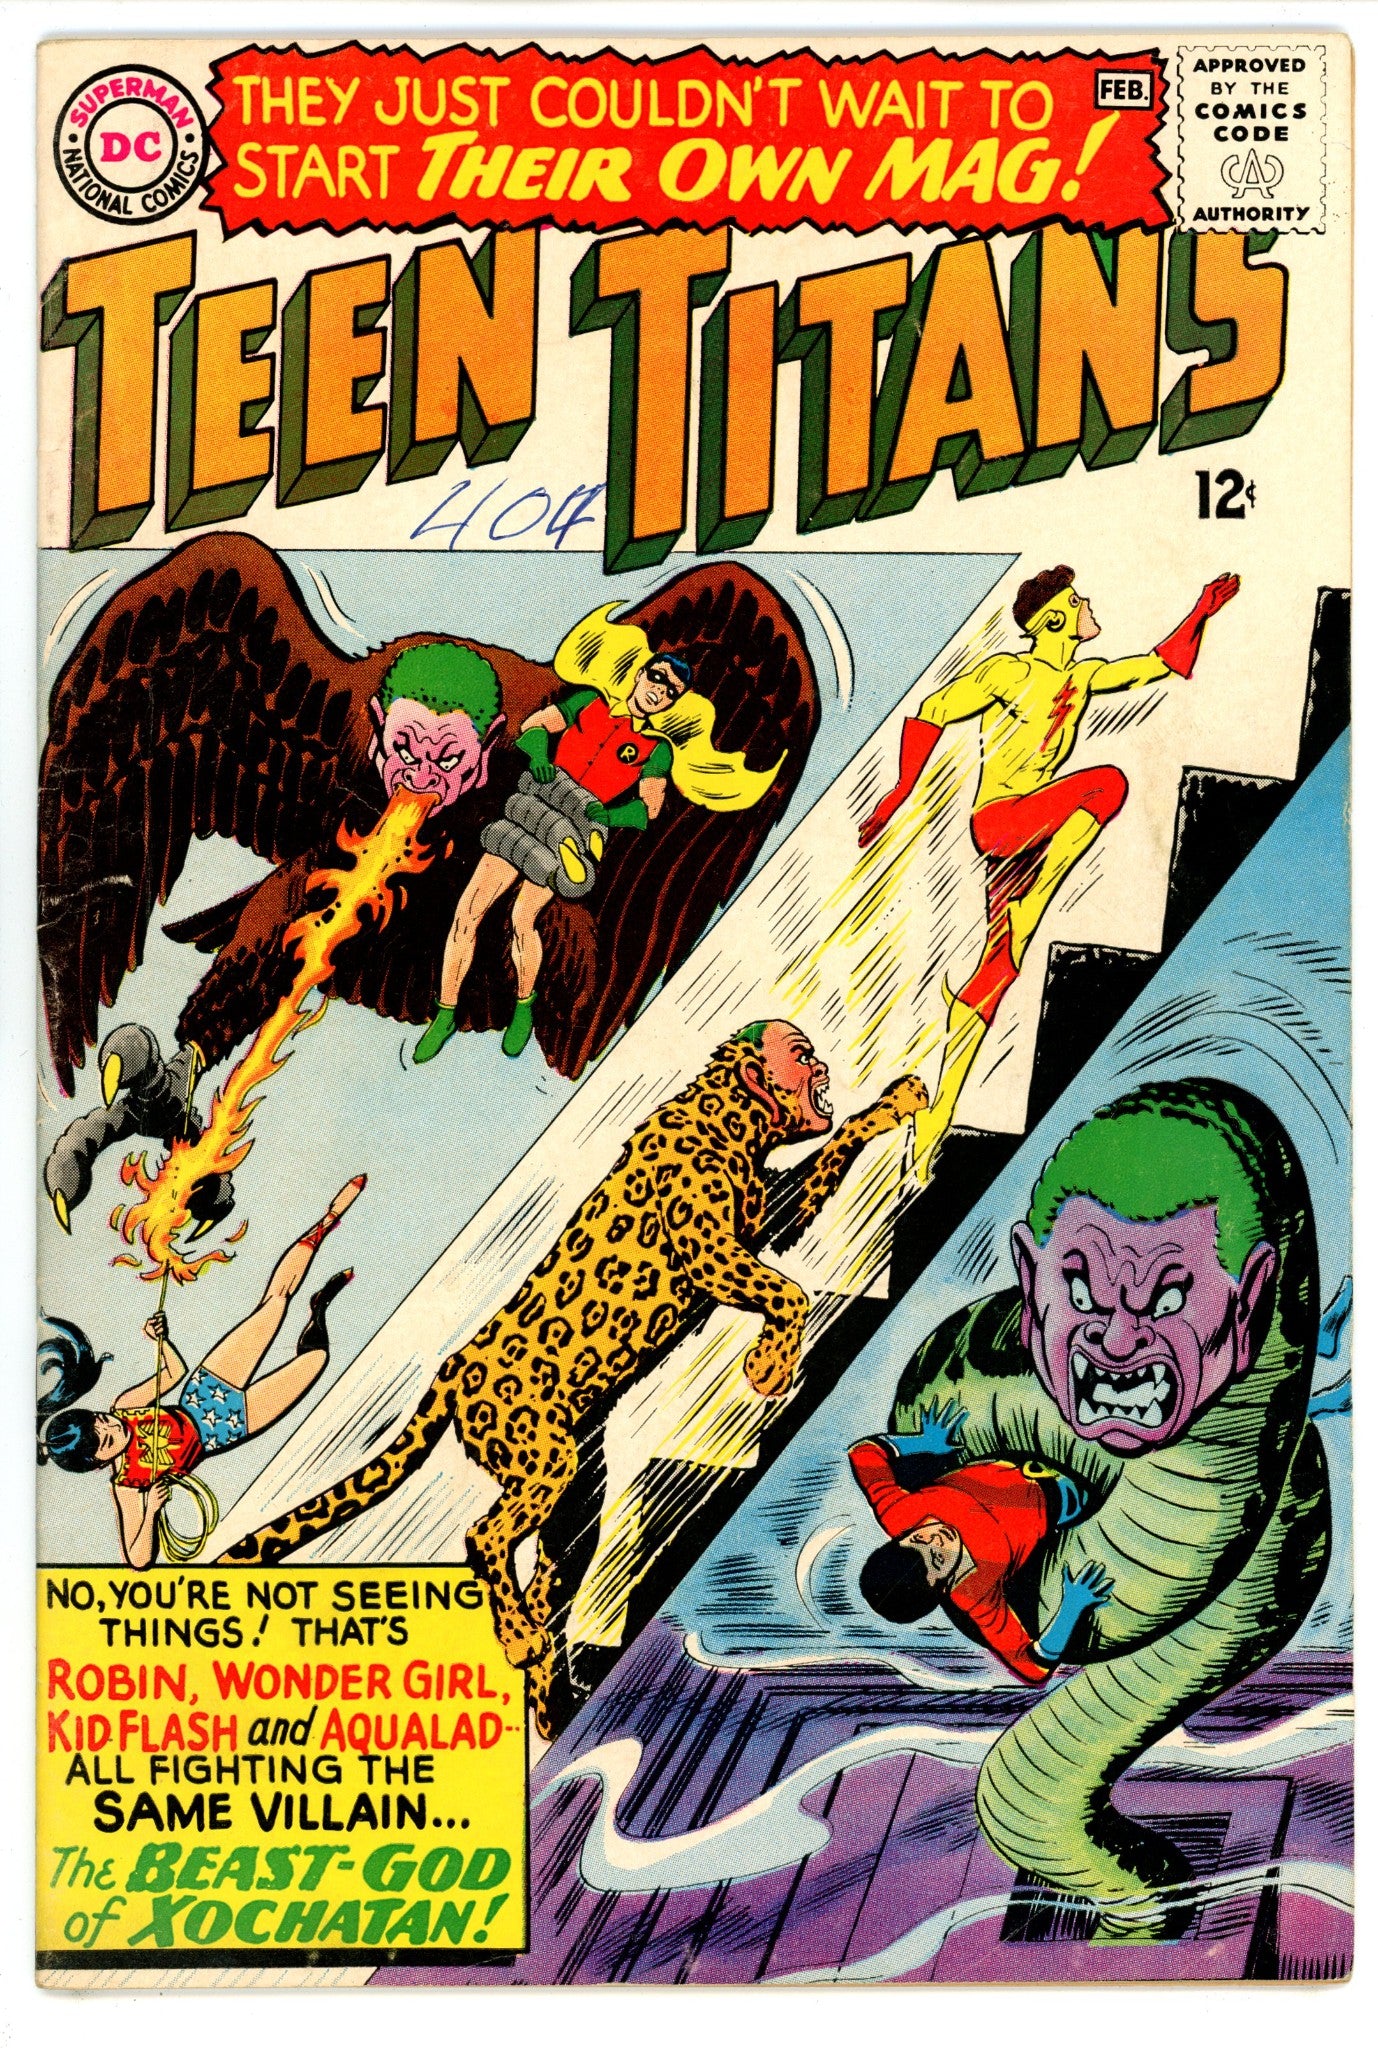 Teen Titans Vol 1 1 VG+ (4.5) (1966) 